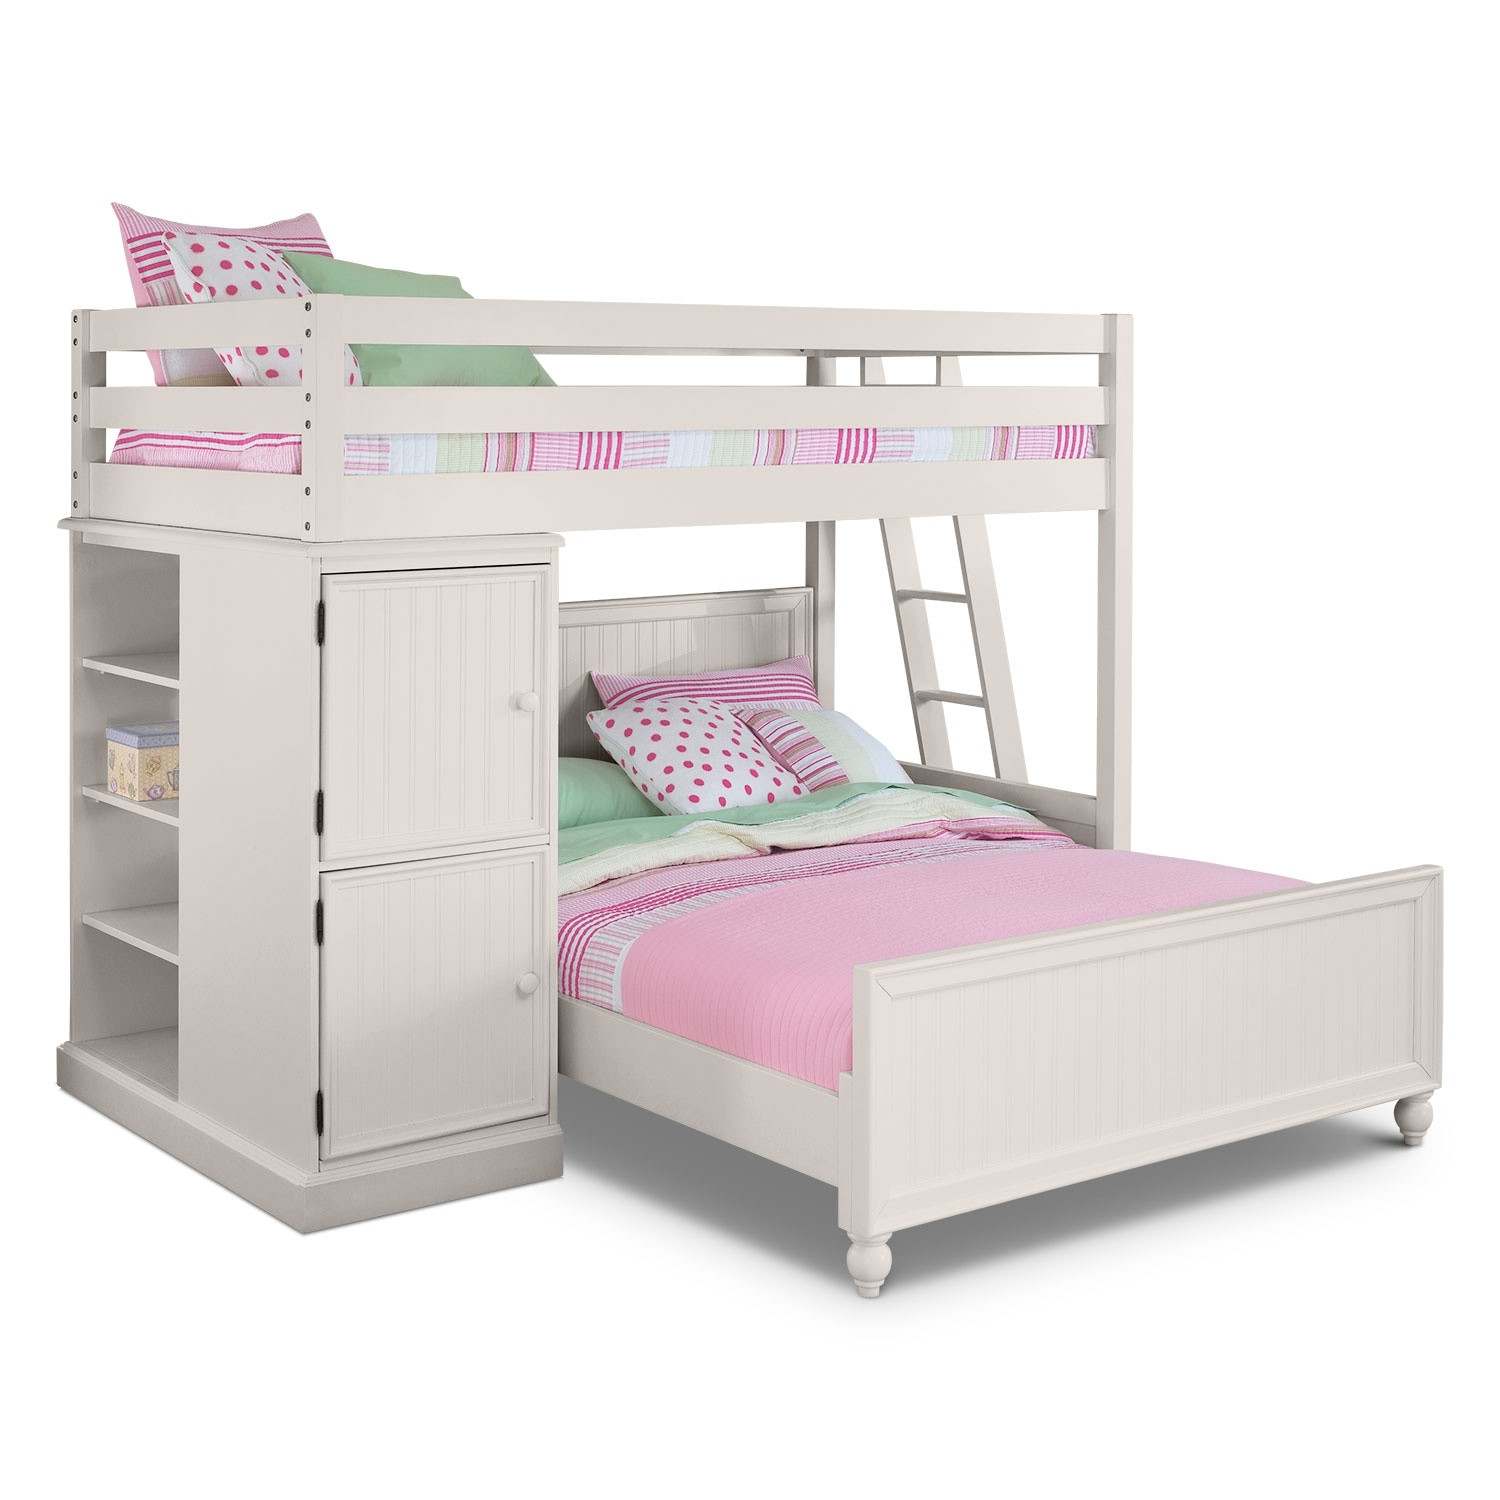 Kids Loft Bedroom Set
 Colorworks Loft Bed with Full Bed White